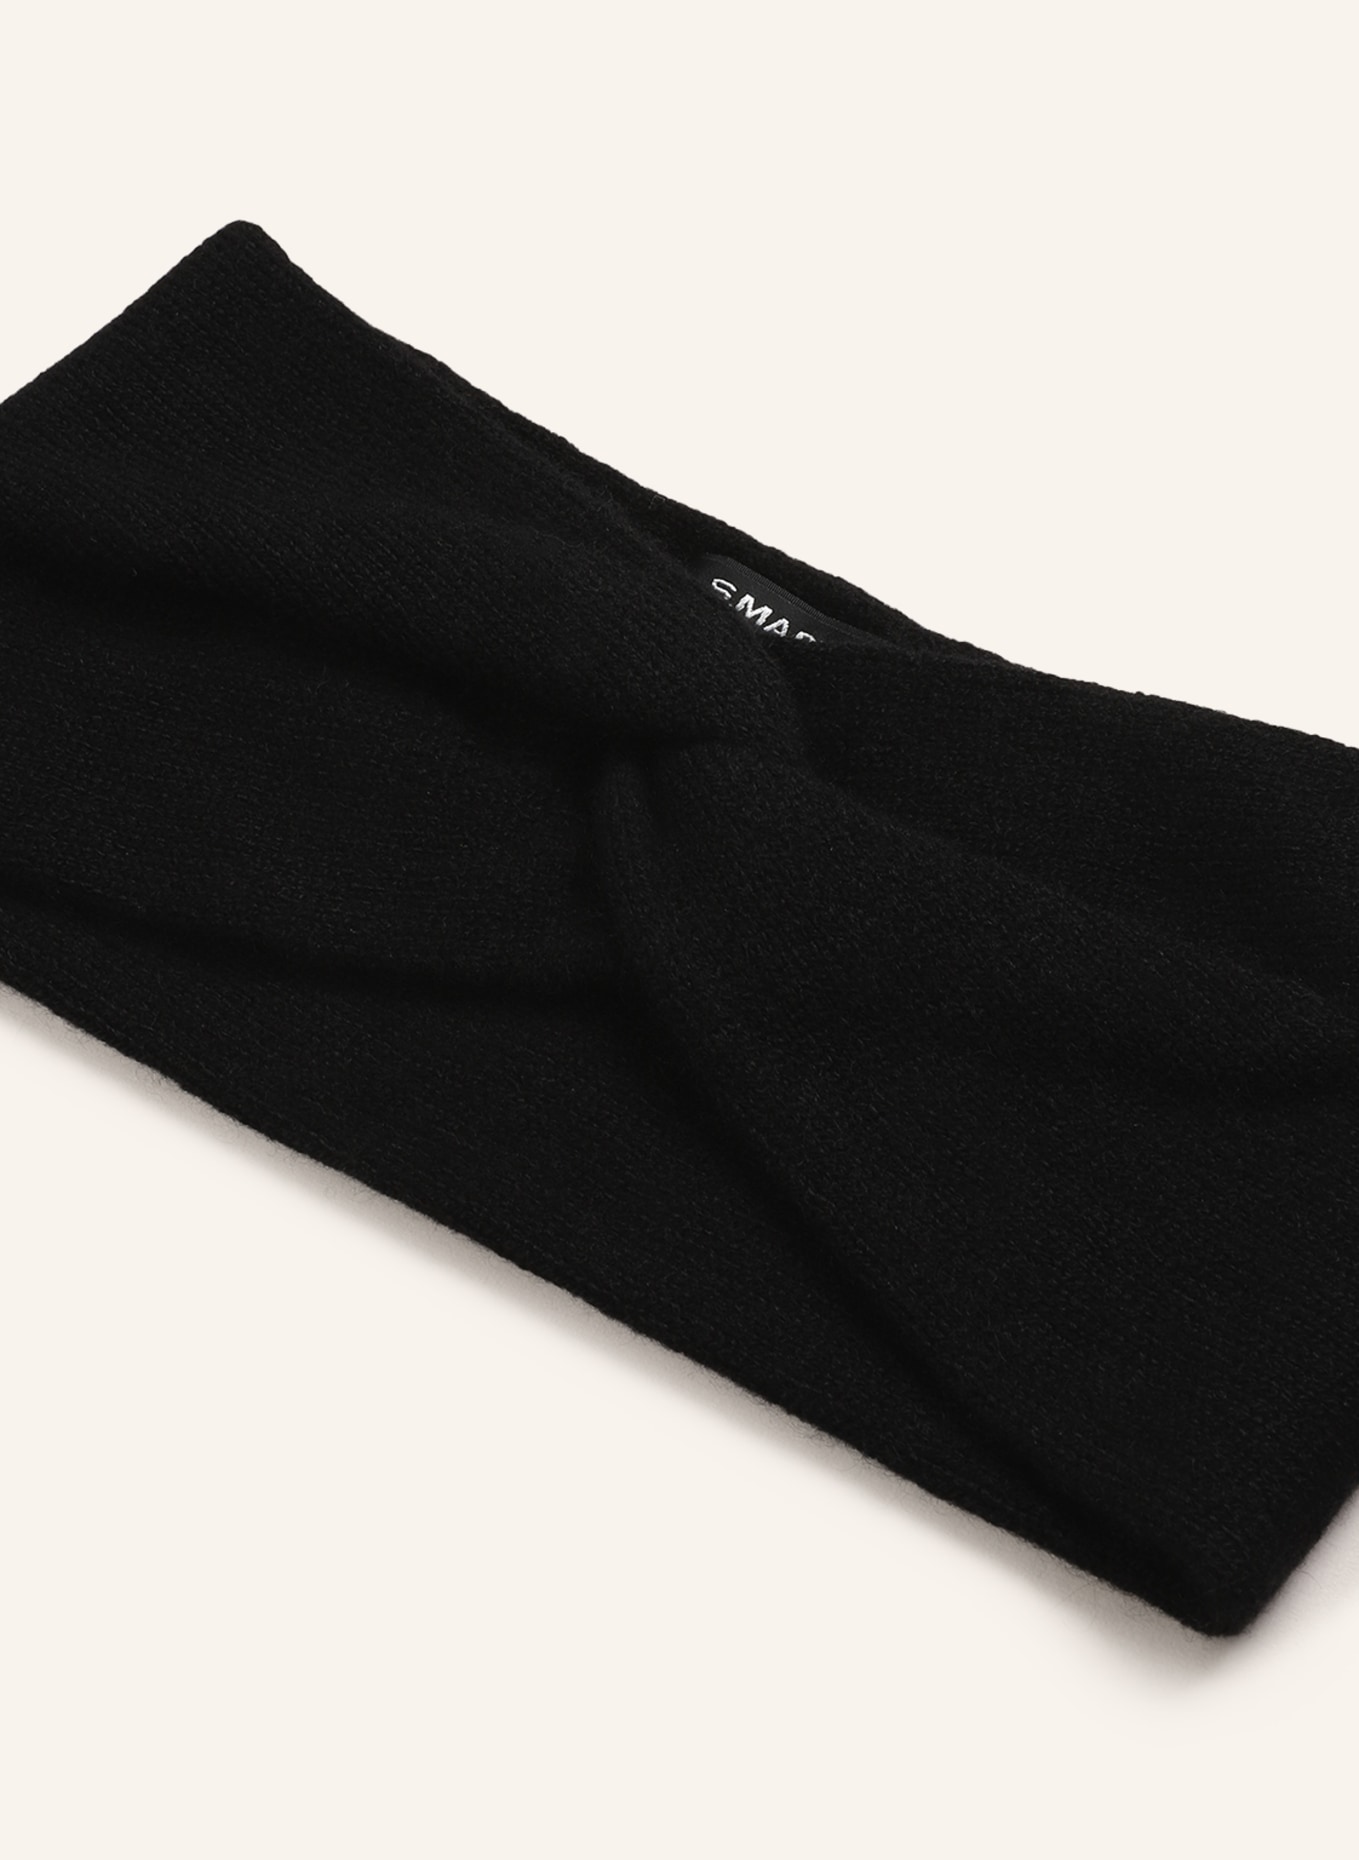 S.MARLON Headband in cashmere, Color: BLACK (Image 2)